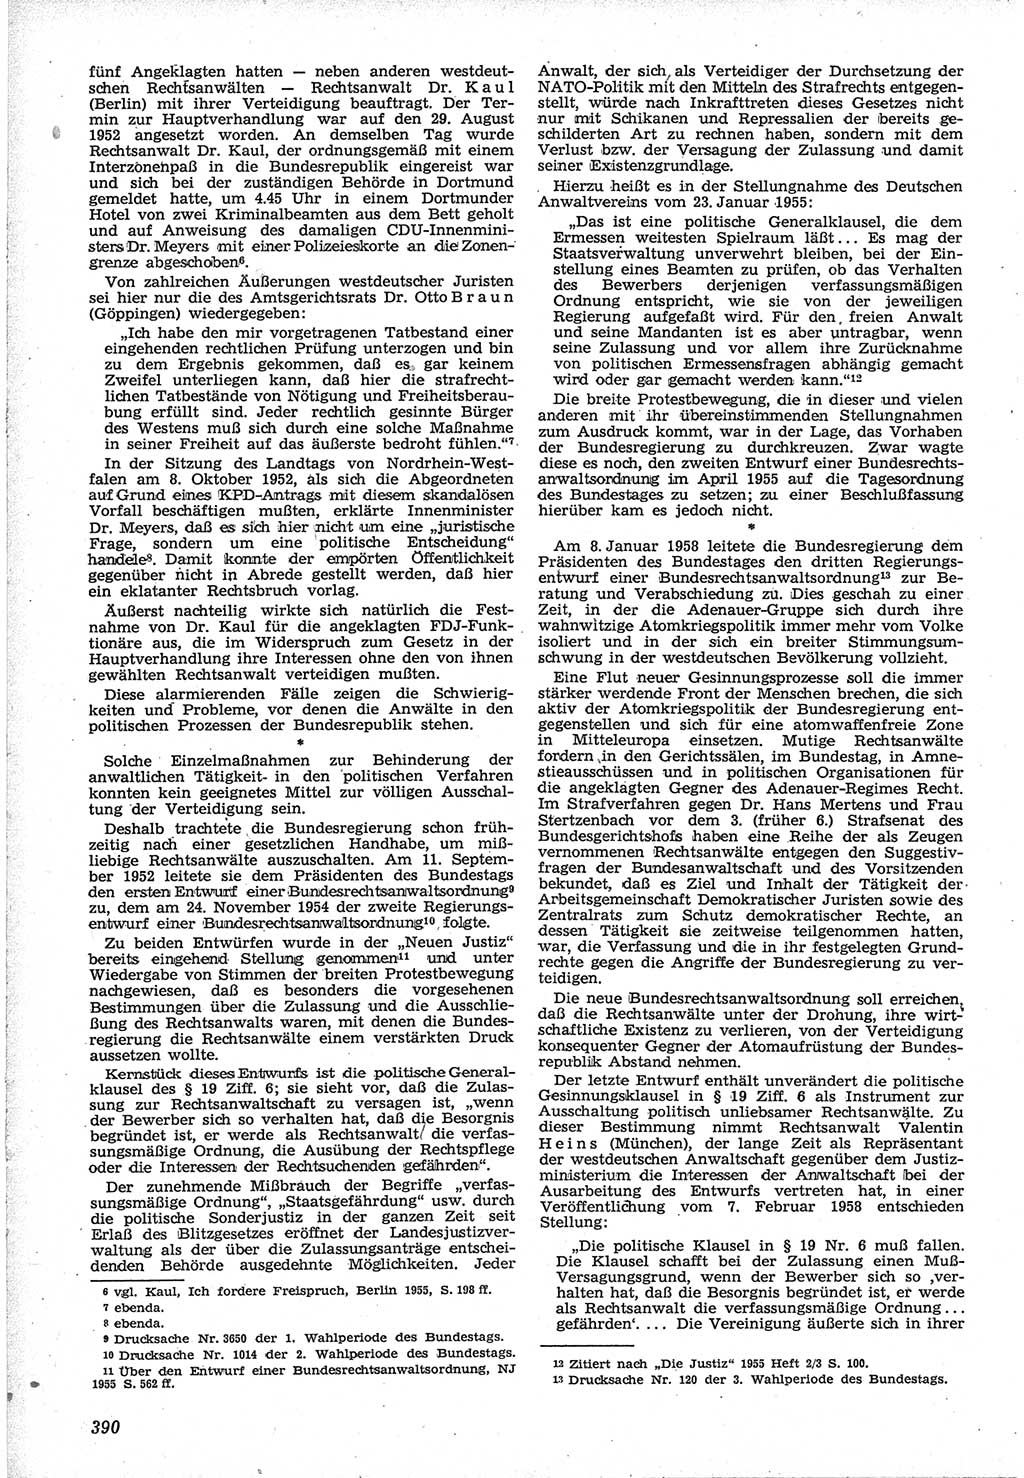 Neue Justiz (NJ), Zeitschrift für Recht und Rechtswissenschaft [Deutsche Demokratische Republik (DDR)], 12. Jahrgang 1958, Seite 390 (NJ DDR 1958, S. 390)